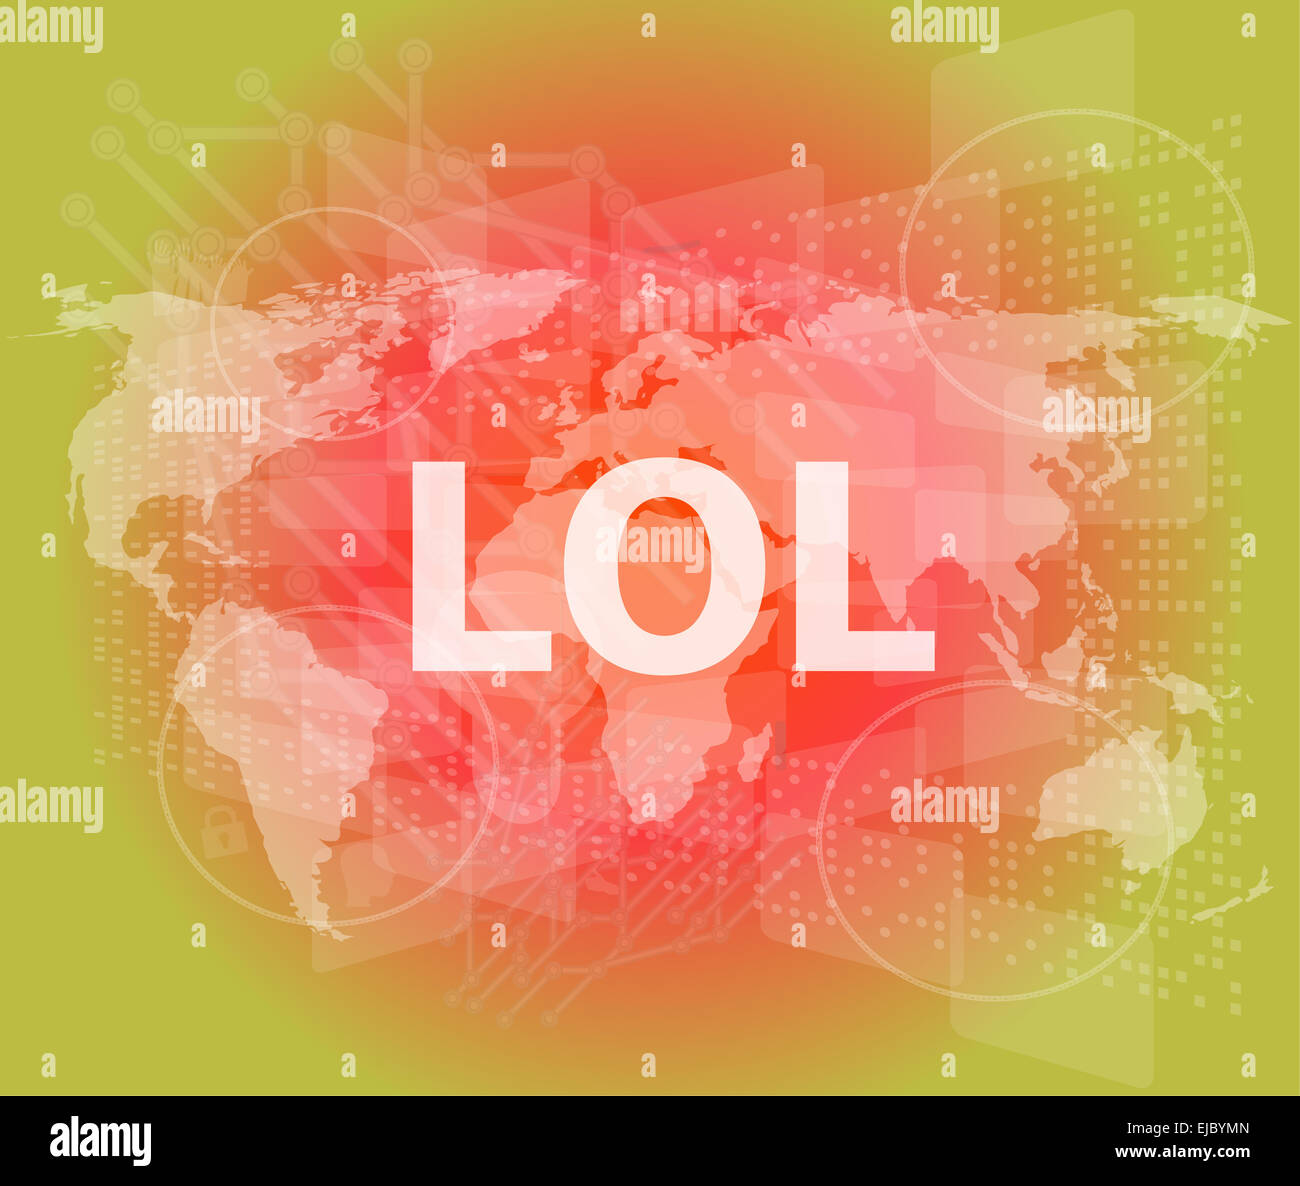 Concetto sociale: Parole lol è una commercializzazione su display digitale Foto Stock